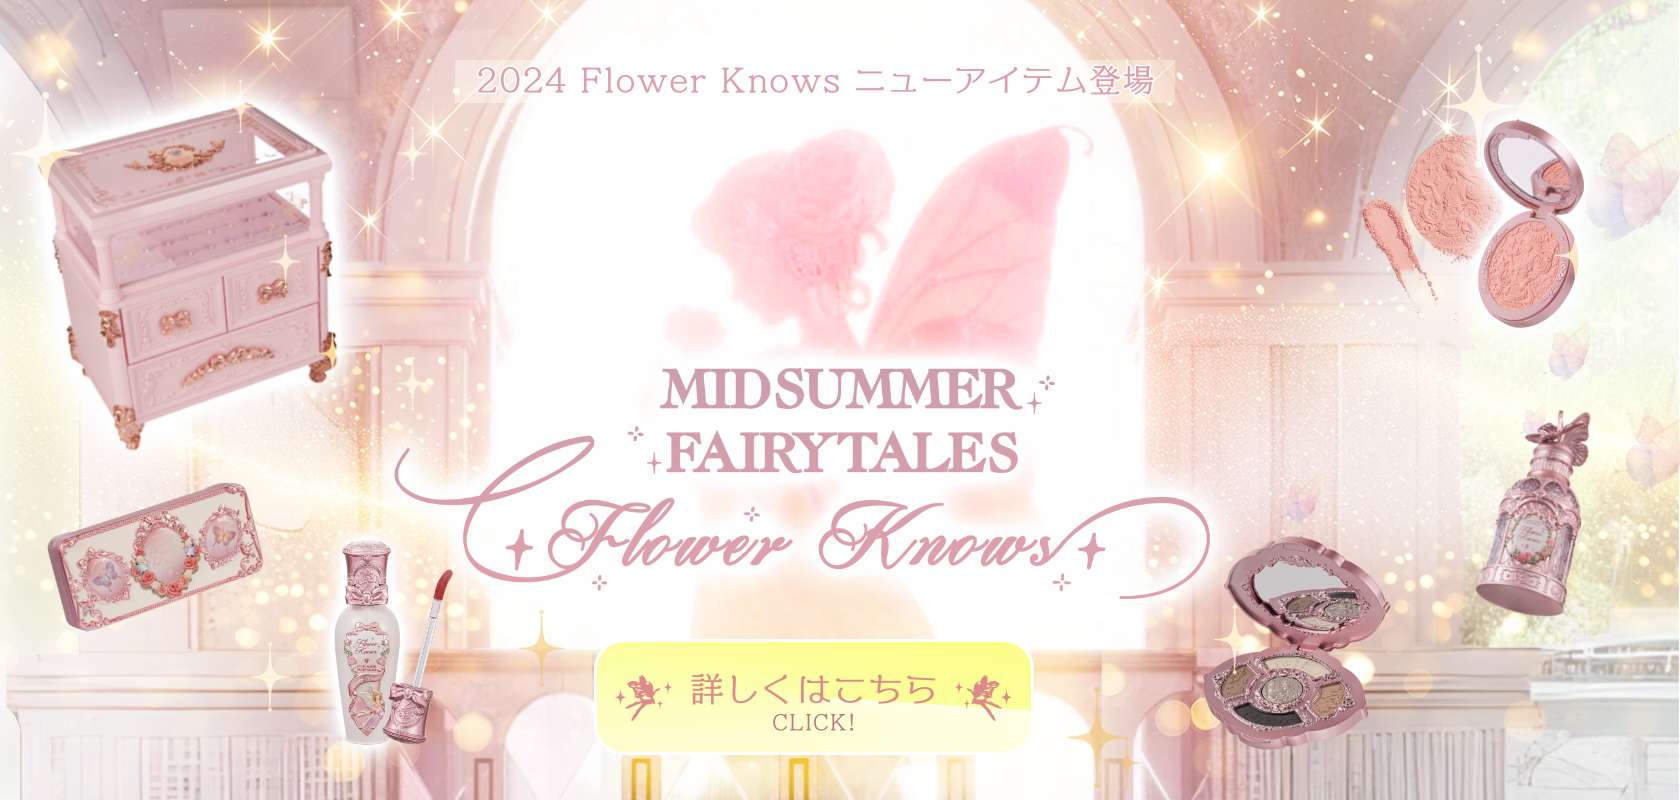 フラワノーズ日本公式ページ – フラワノーズ「Flower Knows」日本公式 